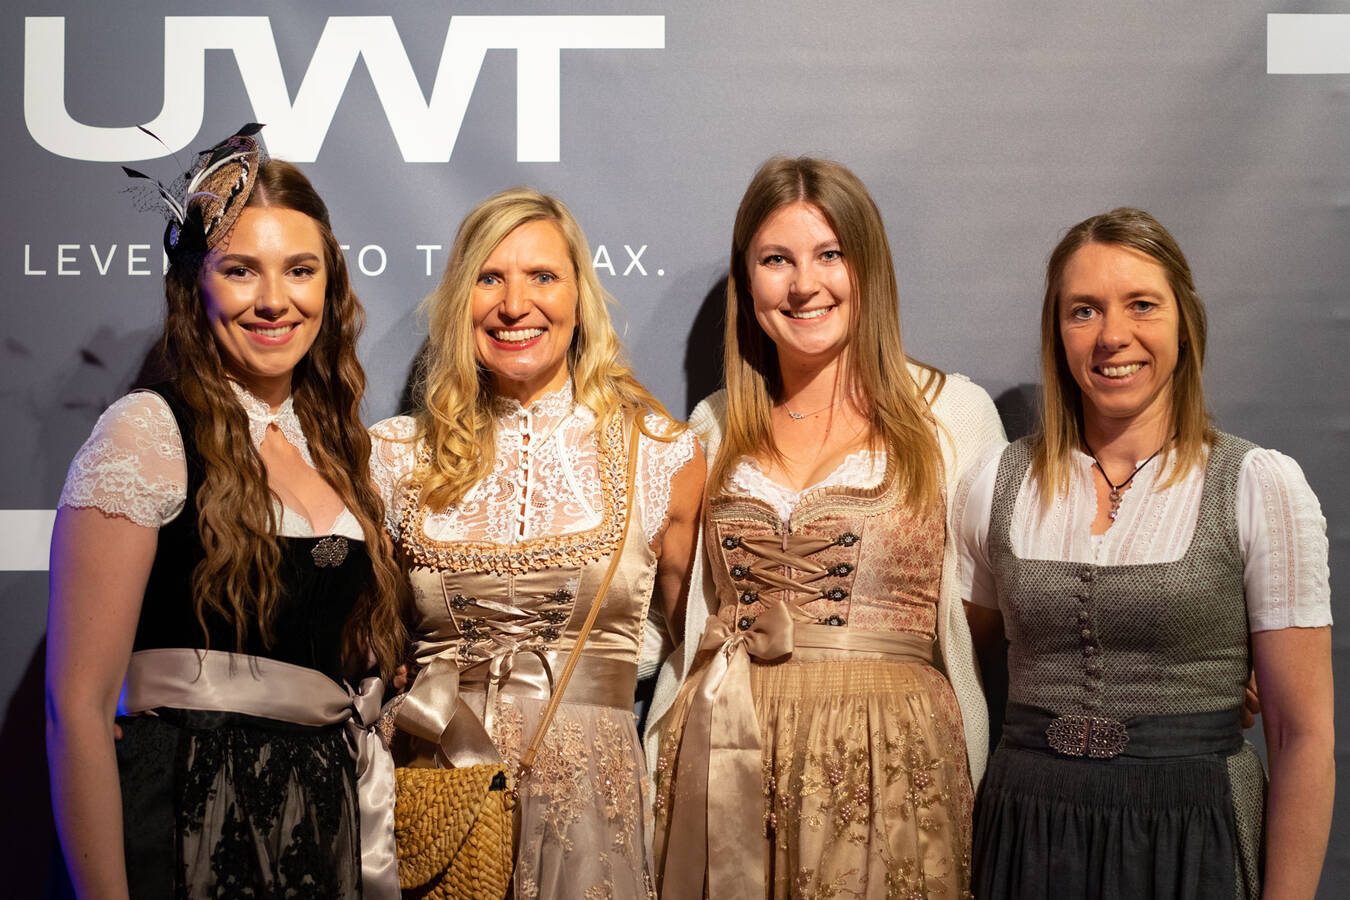 UWT Ladies at the bavarian evening